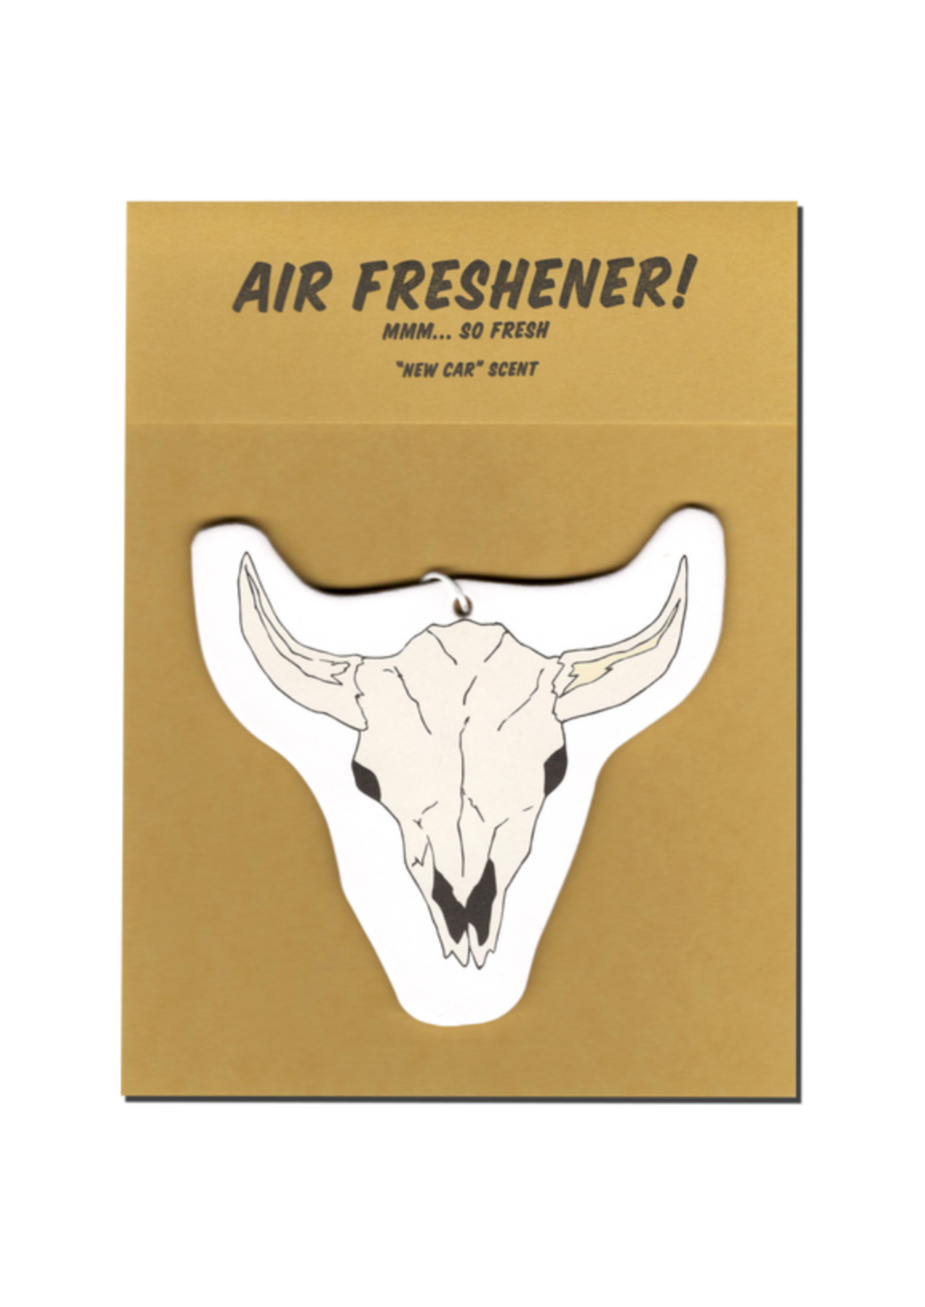 Skull Air Freshener